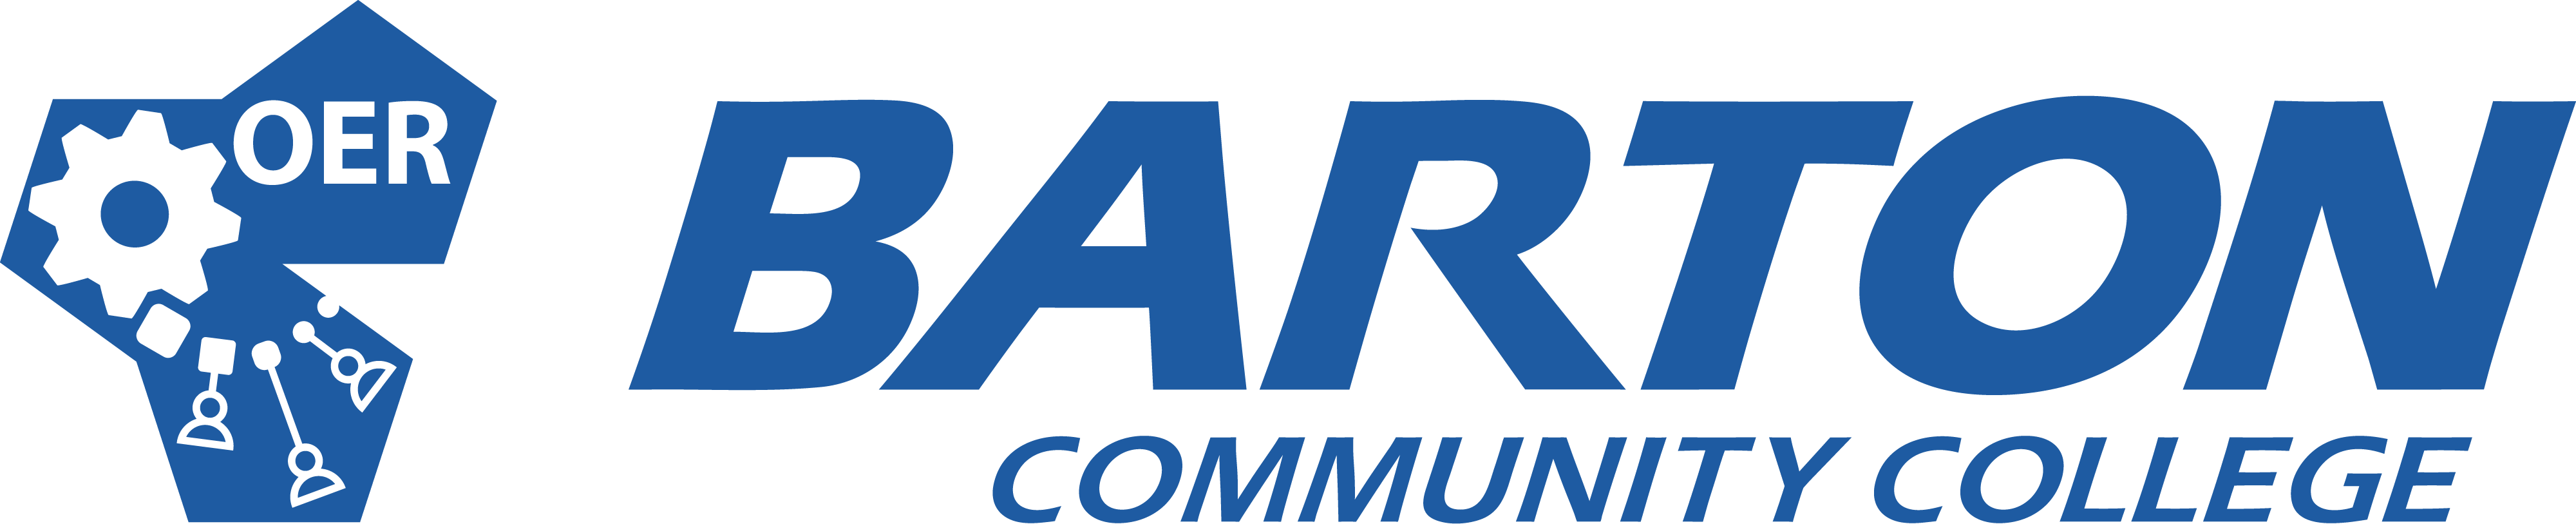 OER logo in blue